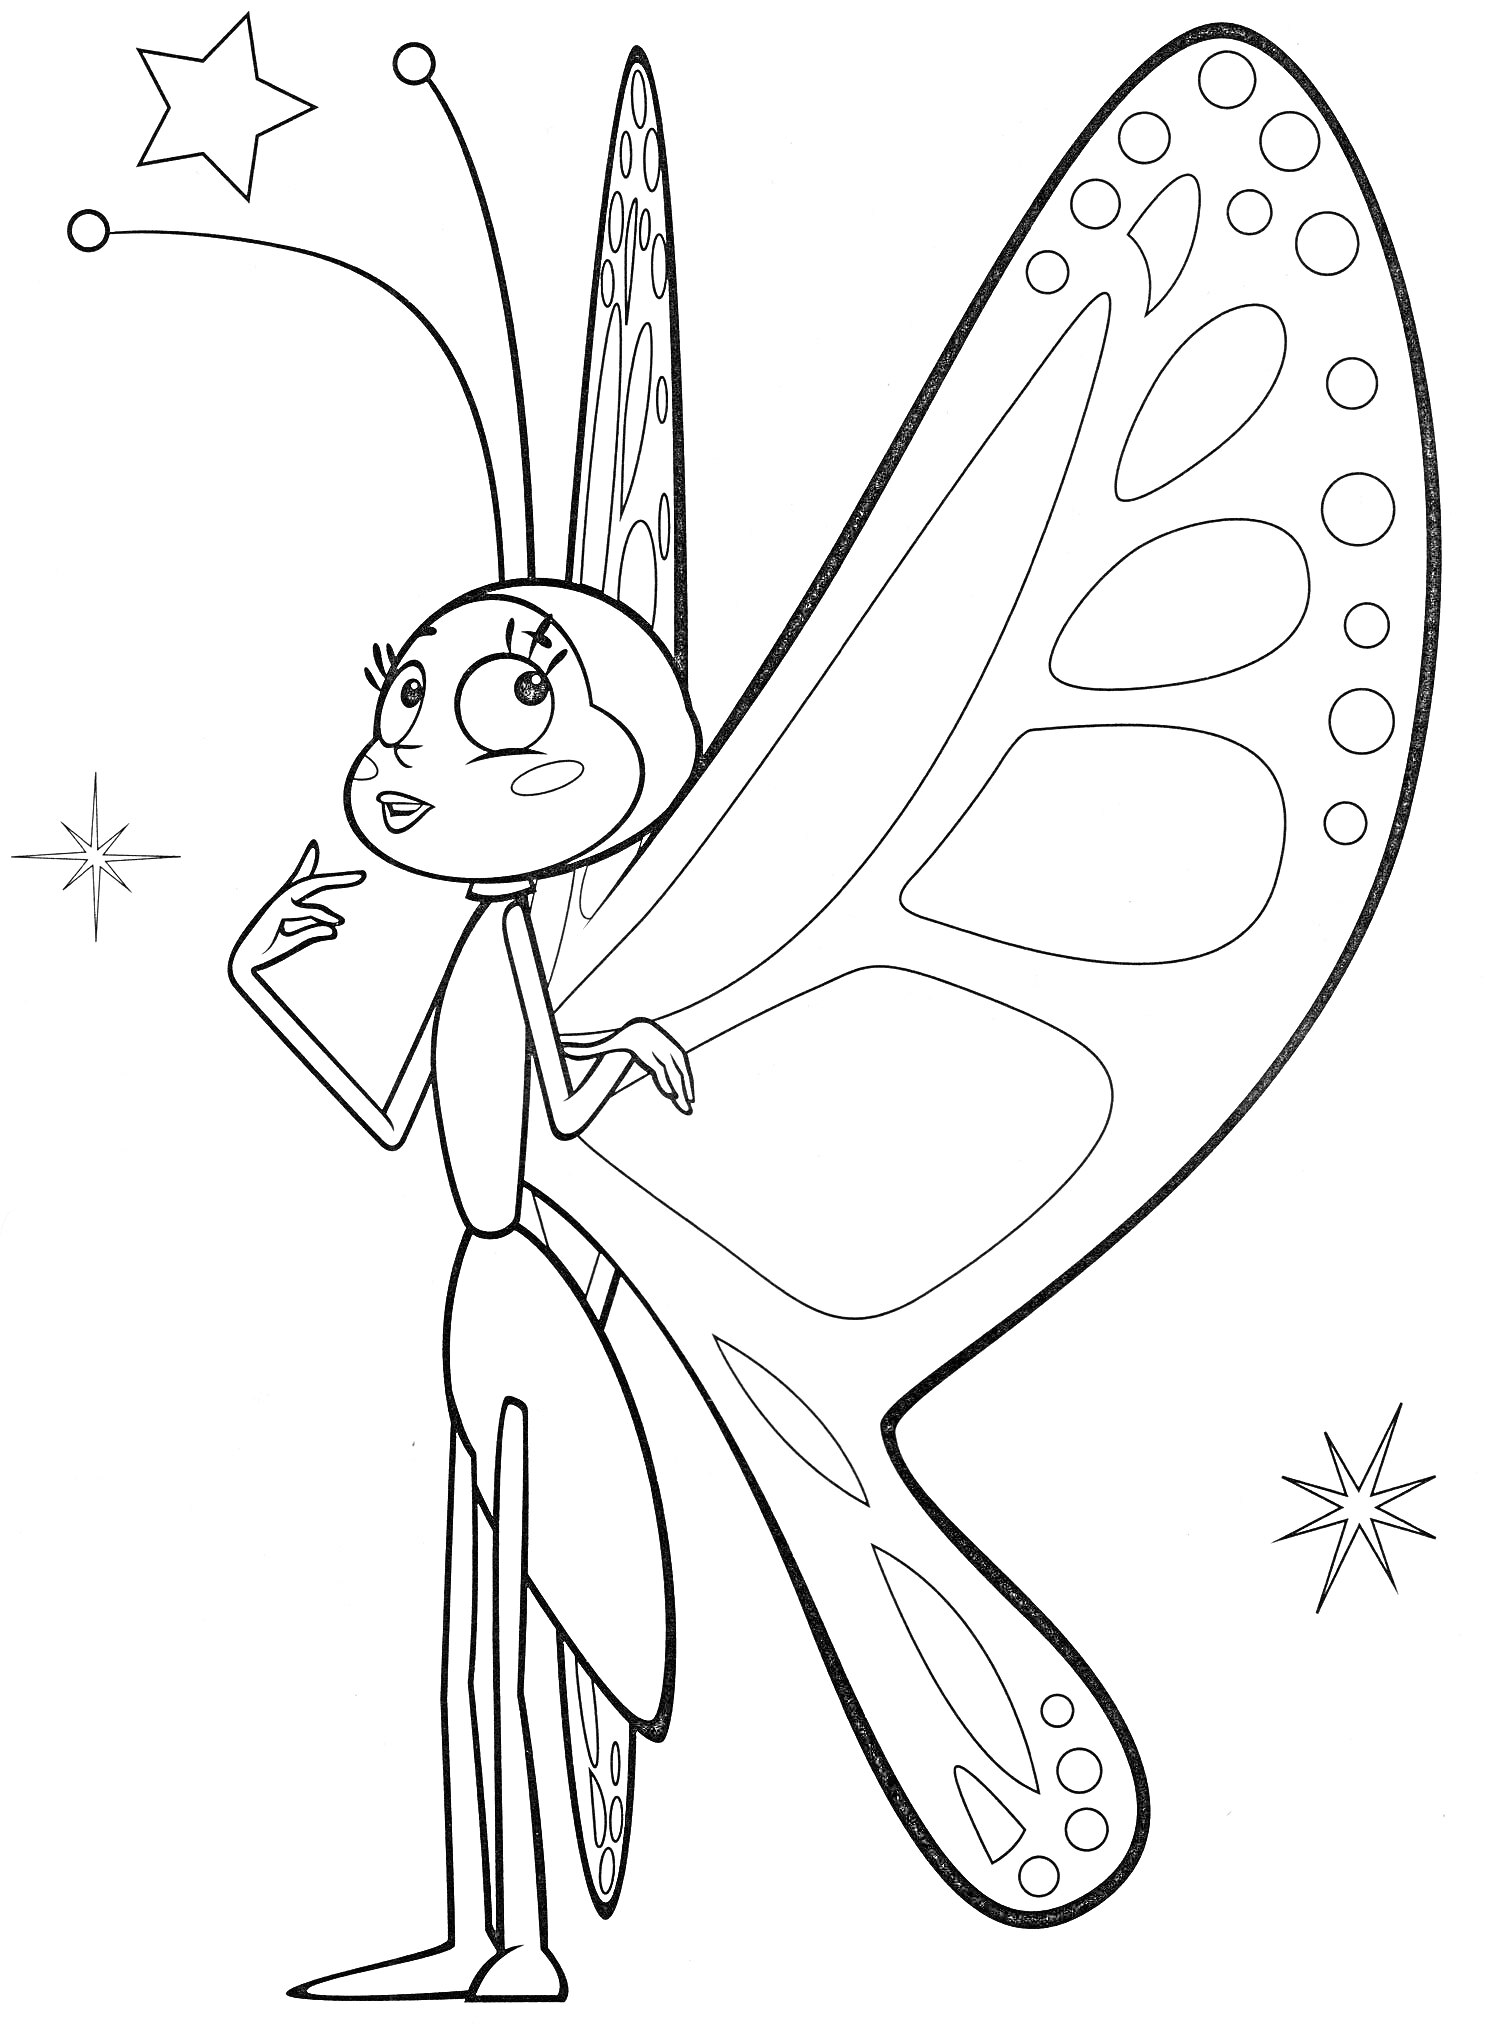 Раскраска Бабочка в мультяшном стиле с большими крыльями и звездами